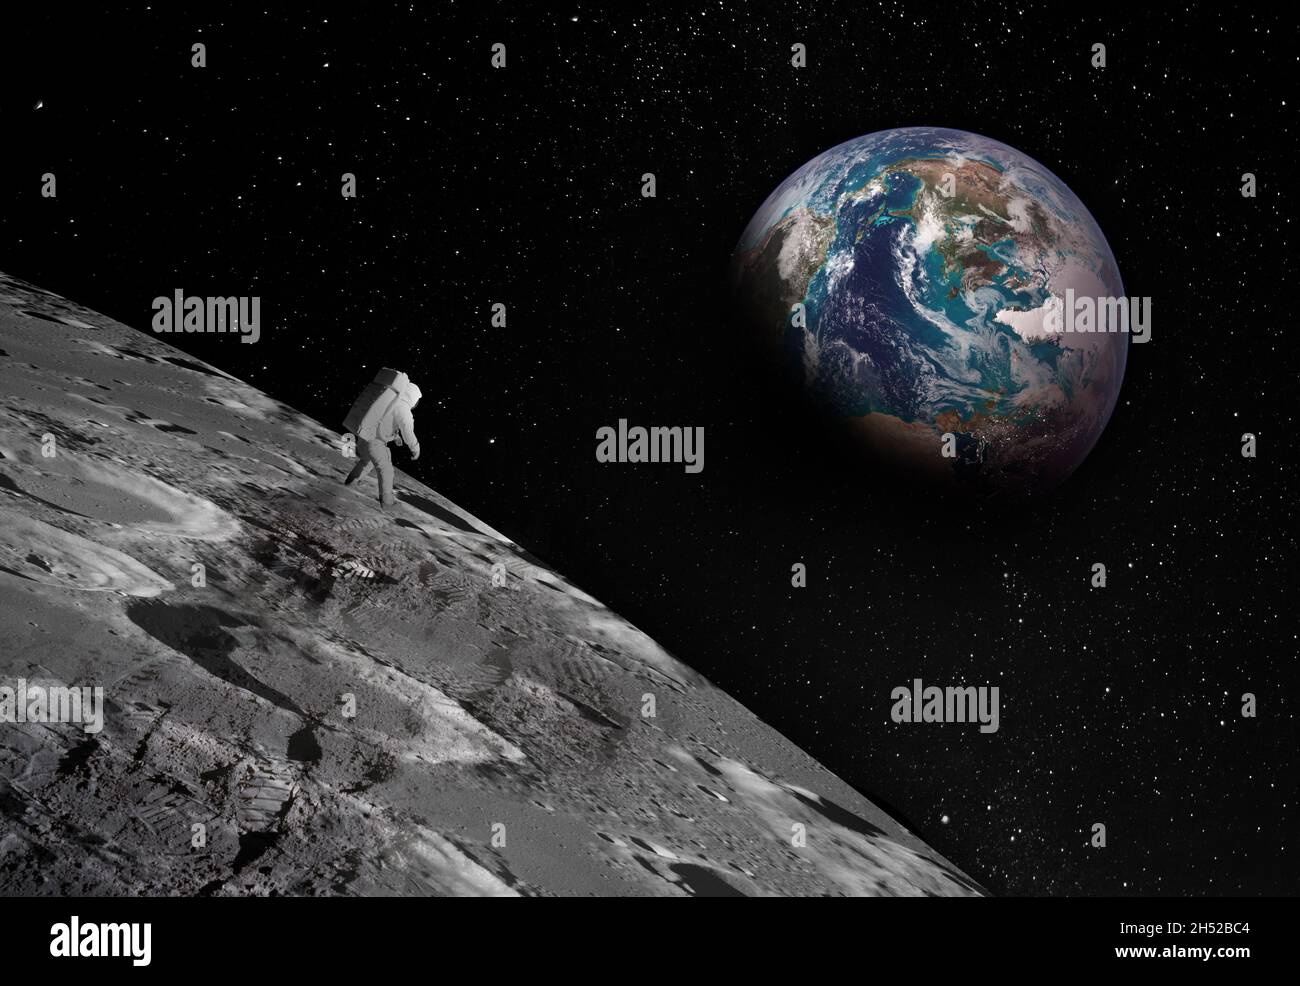 Piccola figura astronauta, chiaramente visibile sulla superficie della Luna, guarda verso il cielo sulla Terra lontana. Le impronte confermano la presenza di un p Foto Stock